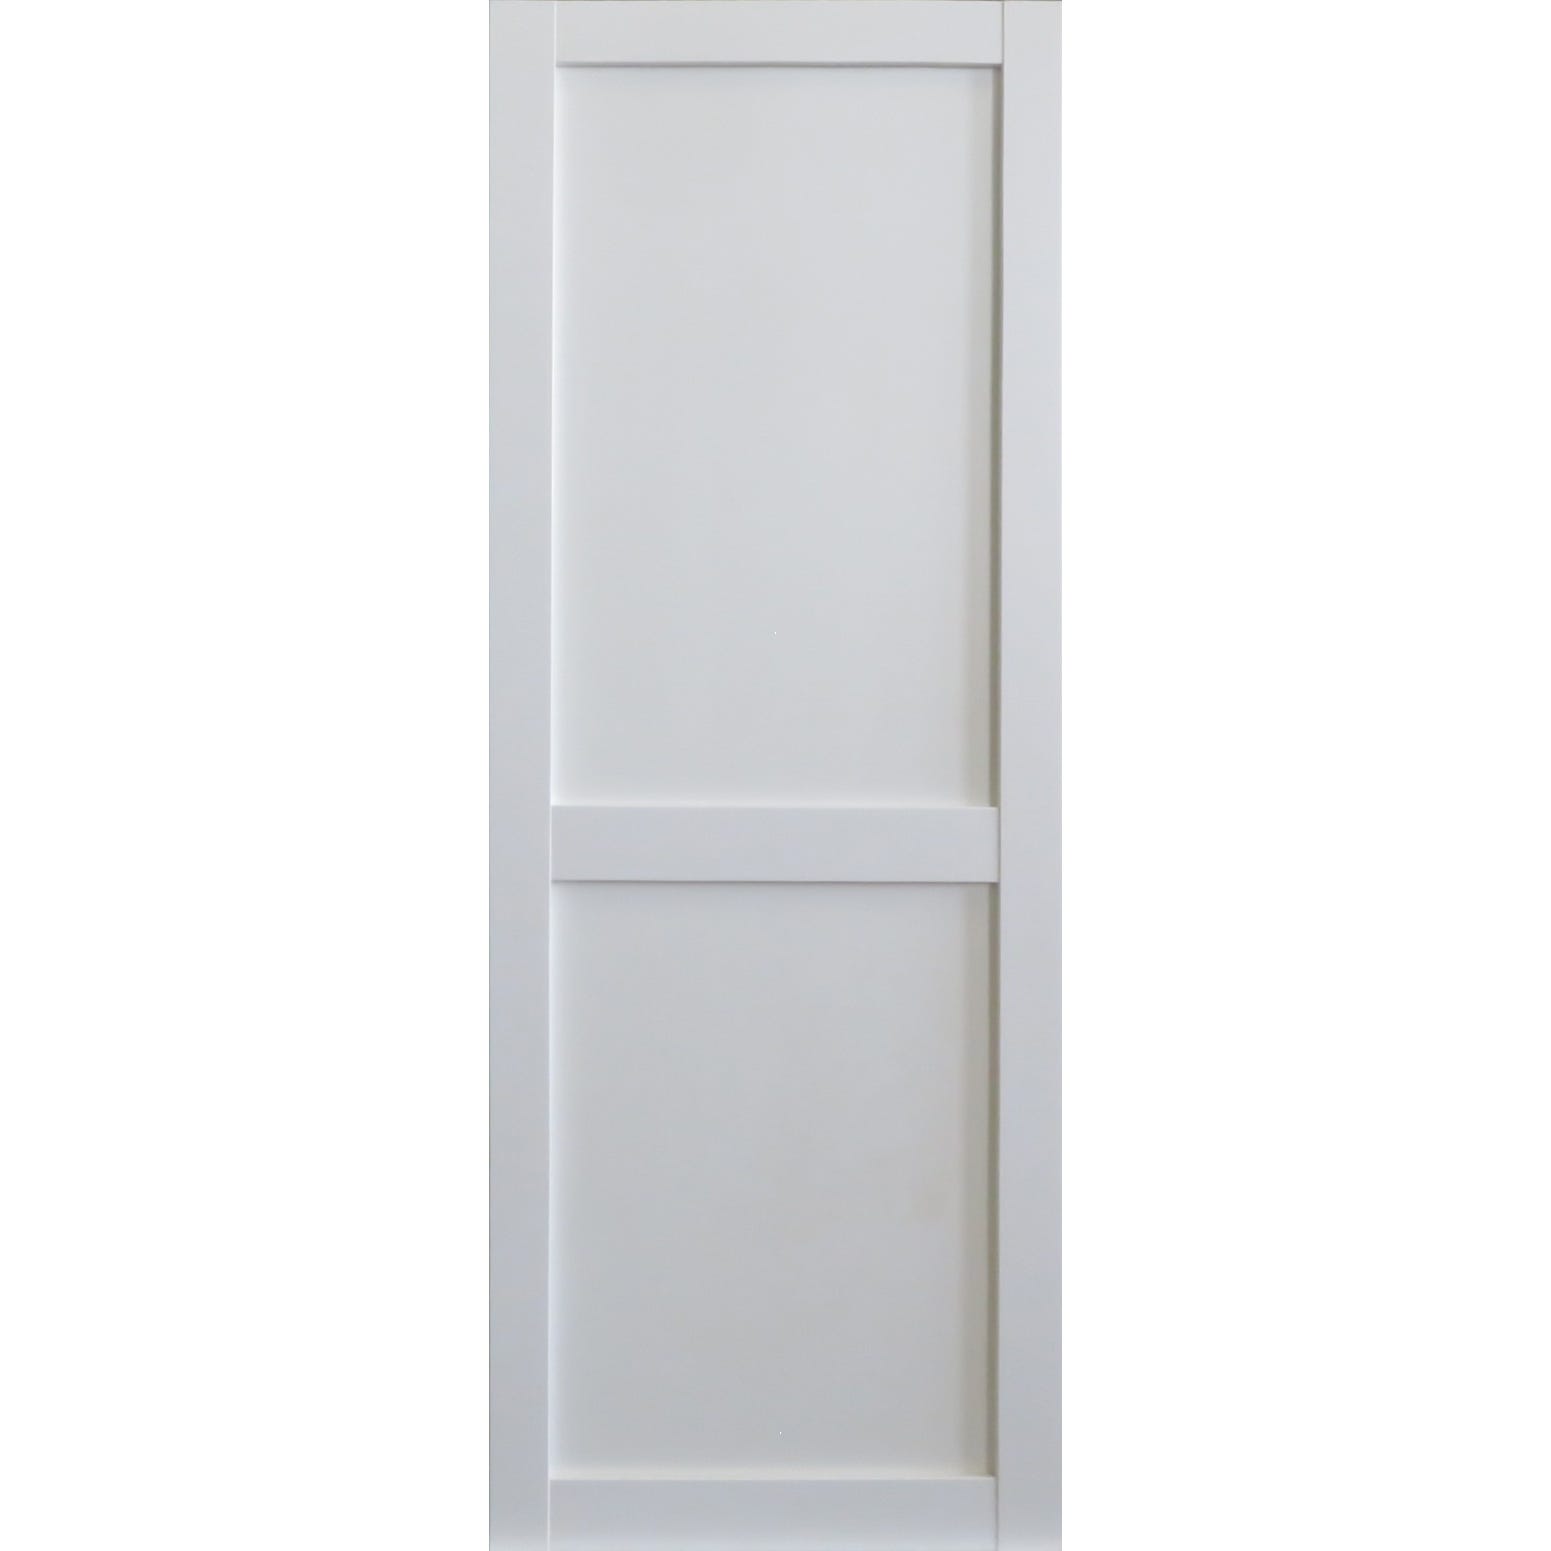 Porte Coulissante Atelier 2 Panneaux Blanc H204 x L83 GD MENUISERIES 0